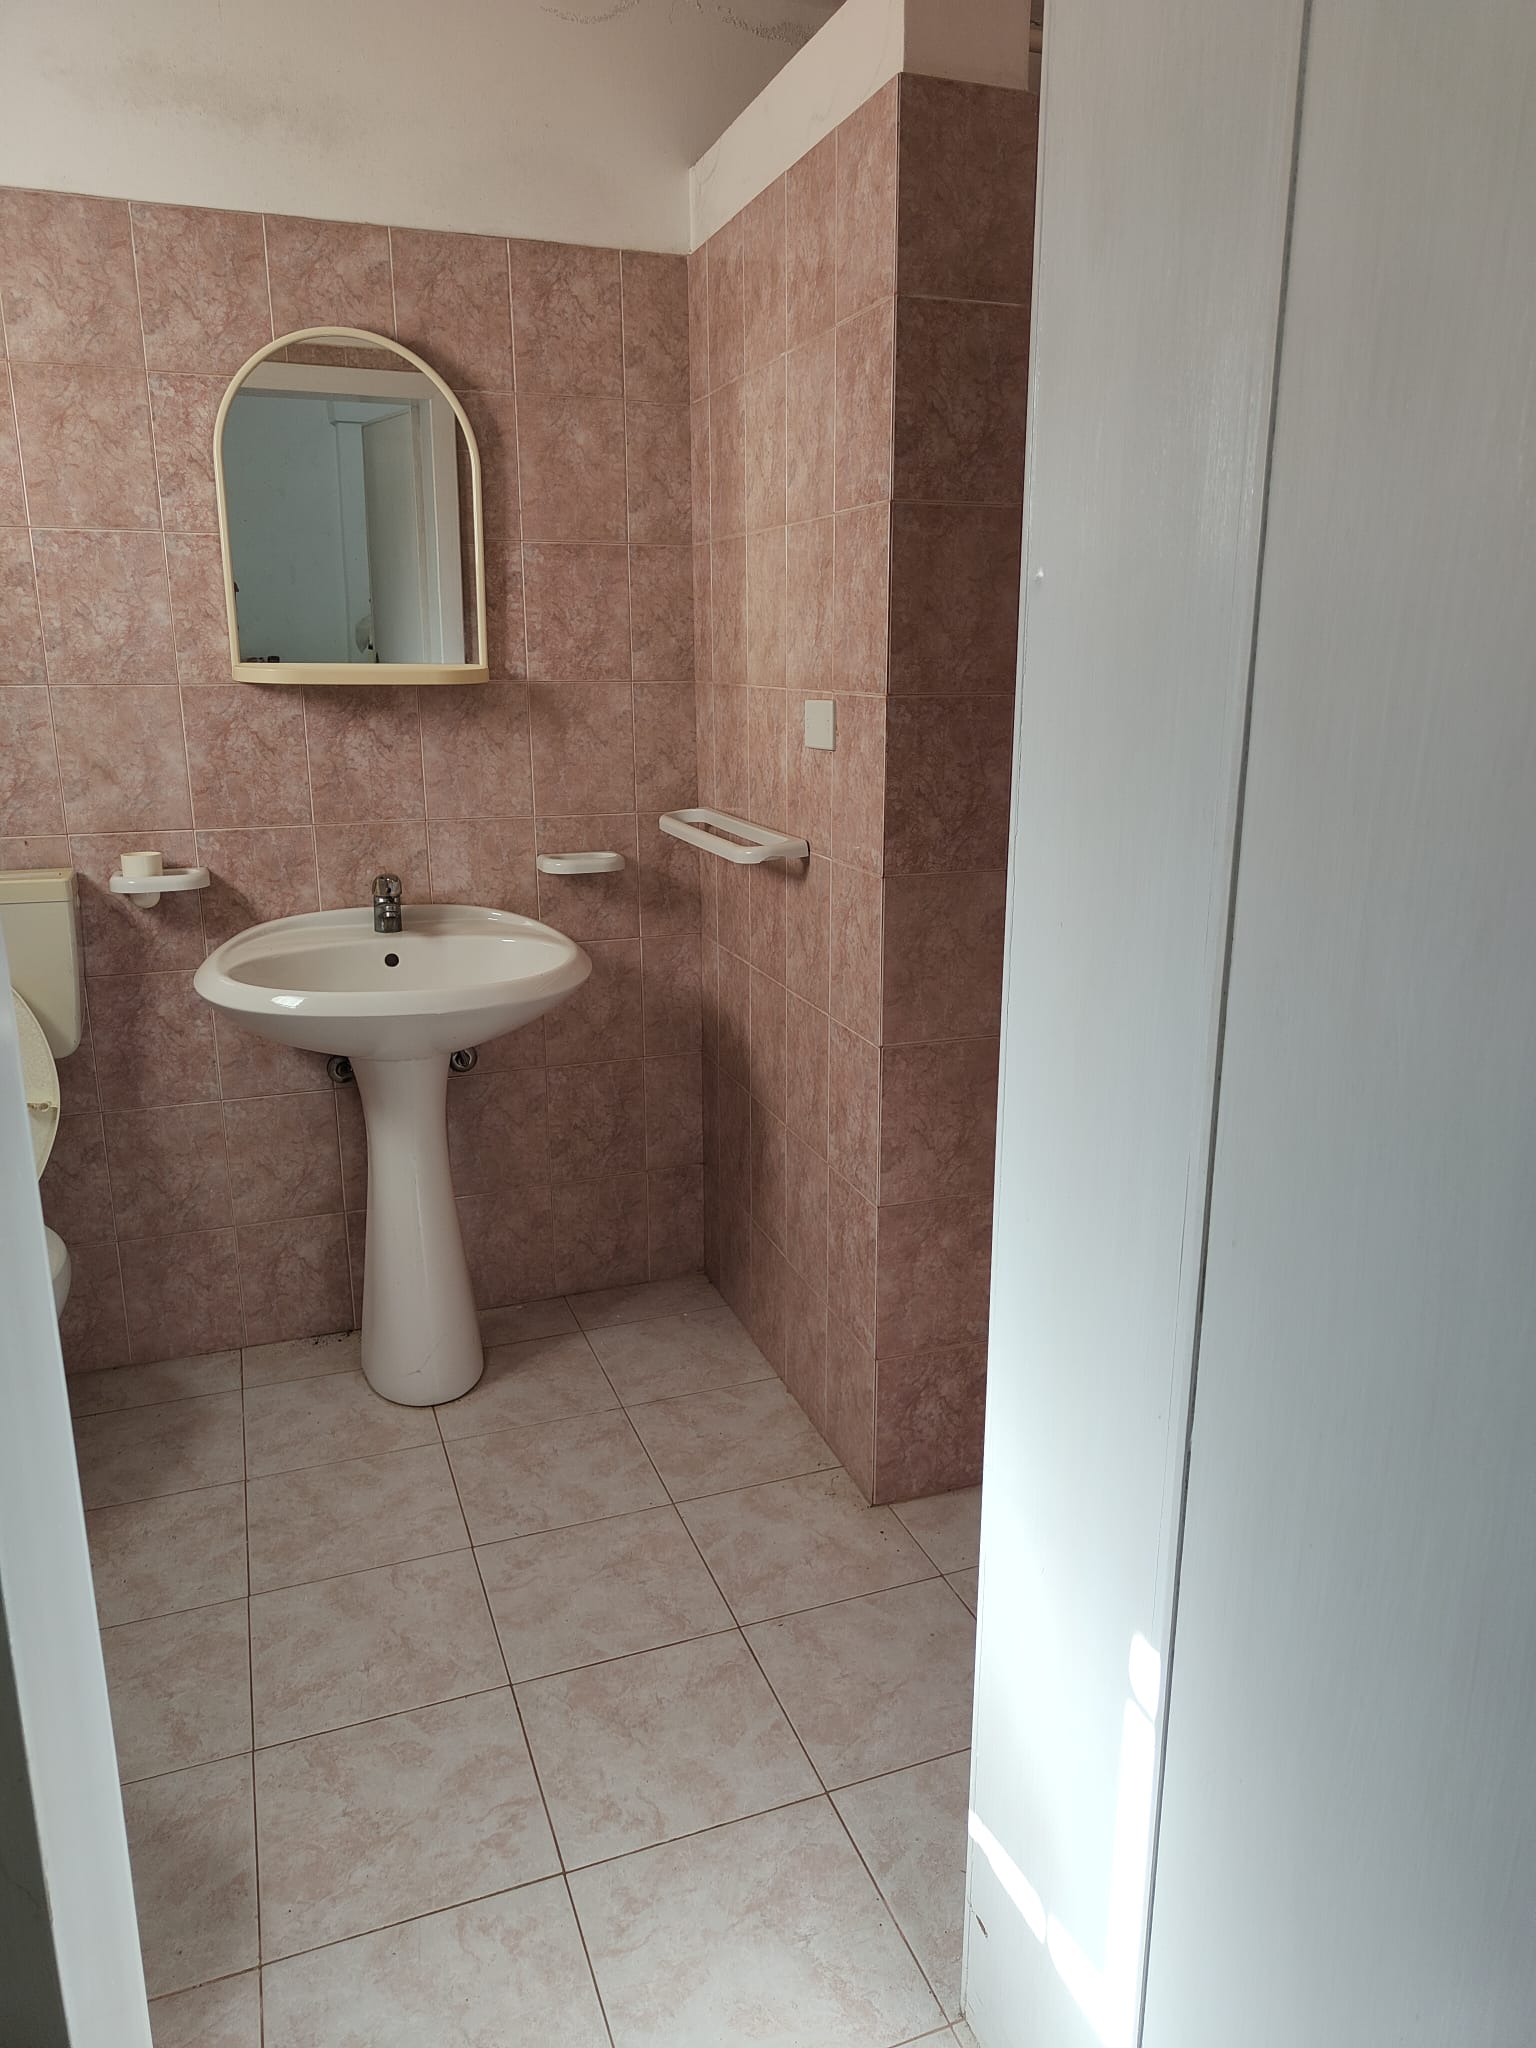 Vendite Salento: Vendita appartamento (Castrignano del Capo) - bagno